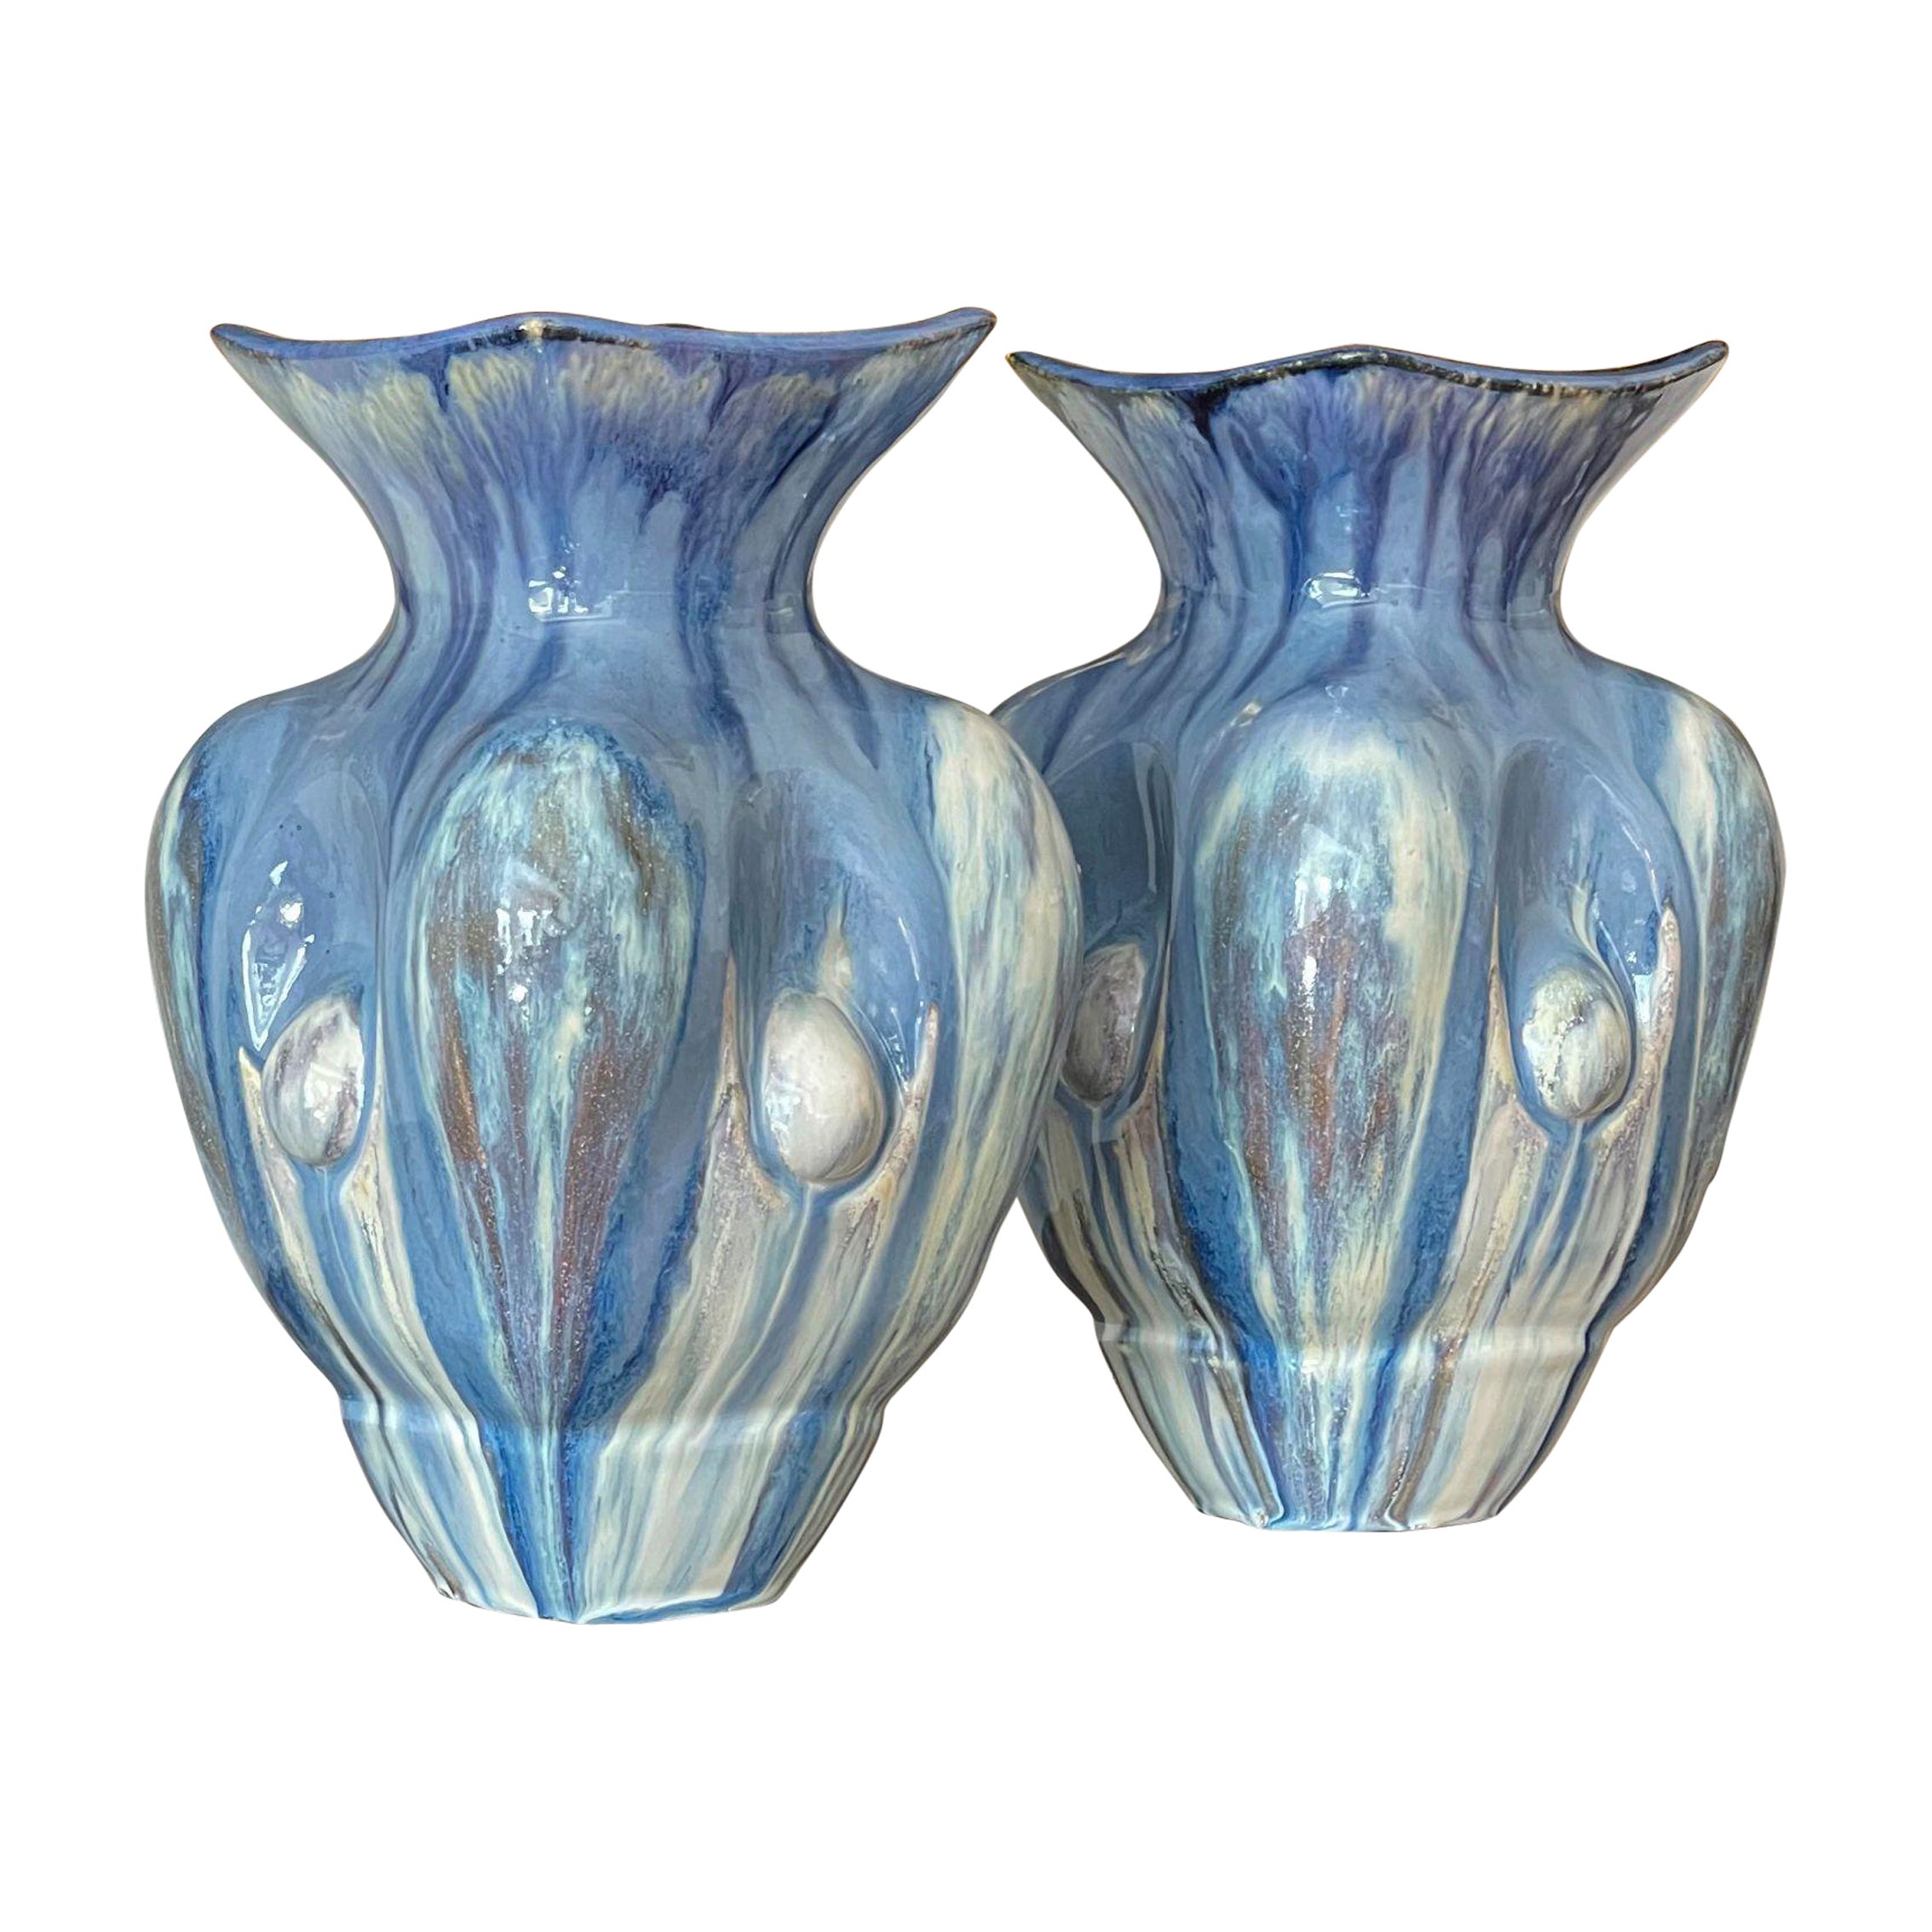 Paire de vases en céramique bleu ciel, pièce unique italienne contemporaine du 21e siècle